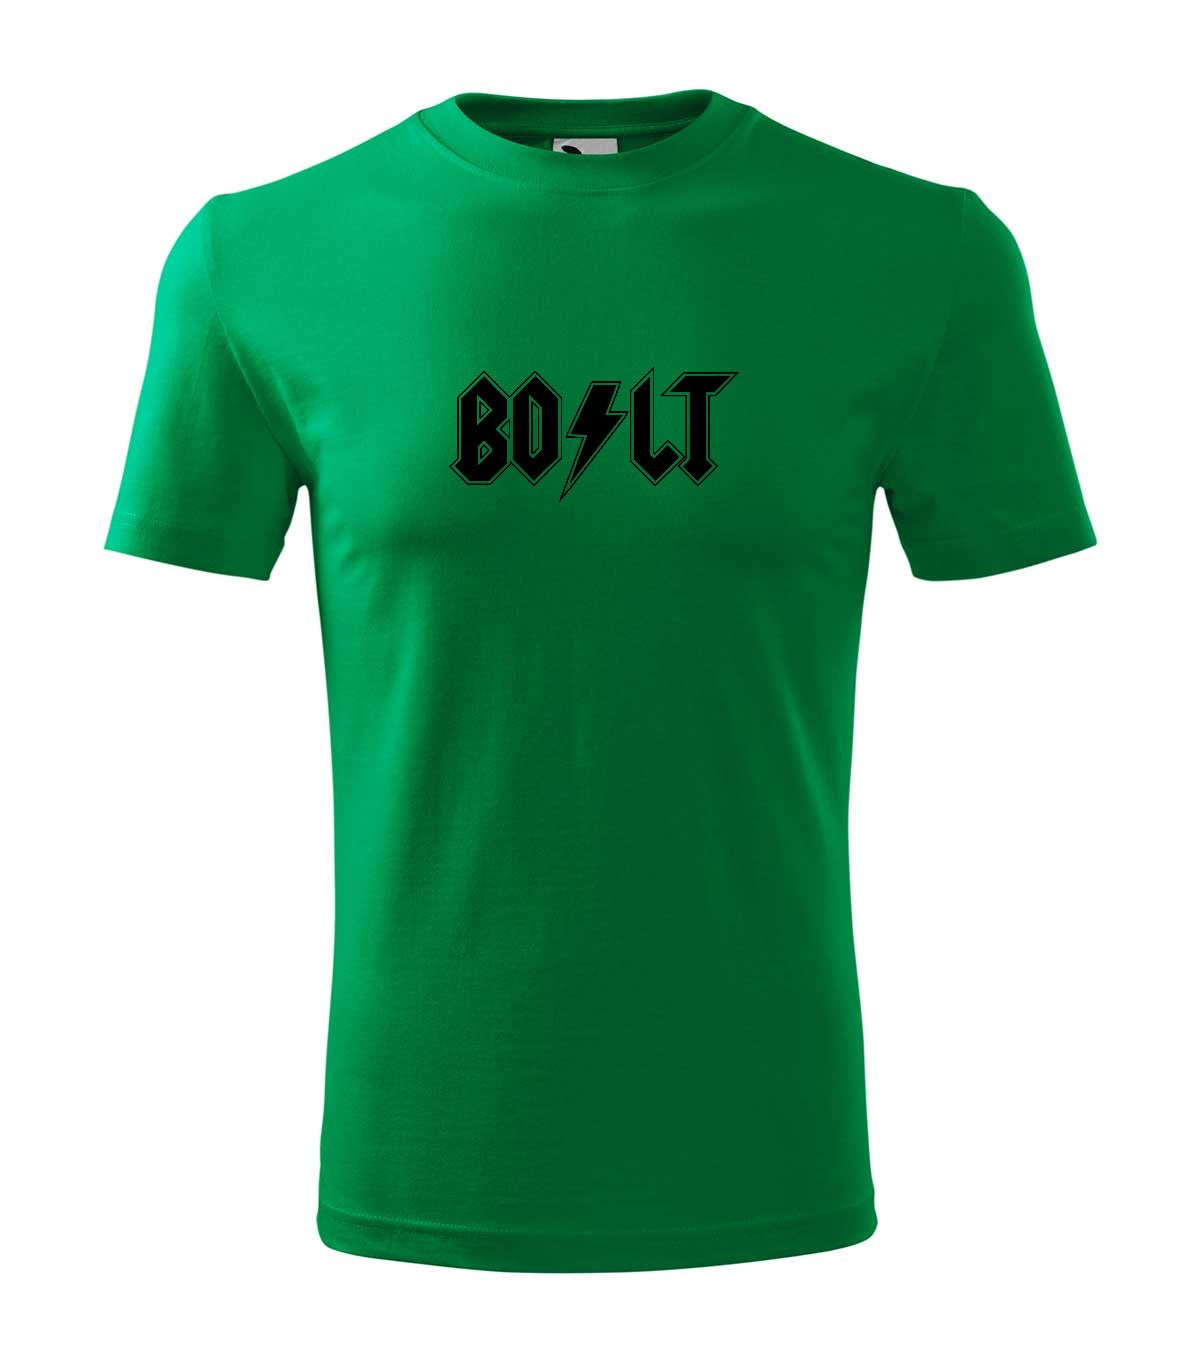 Bolt gyerek technikai póló